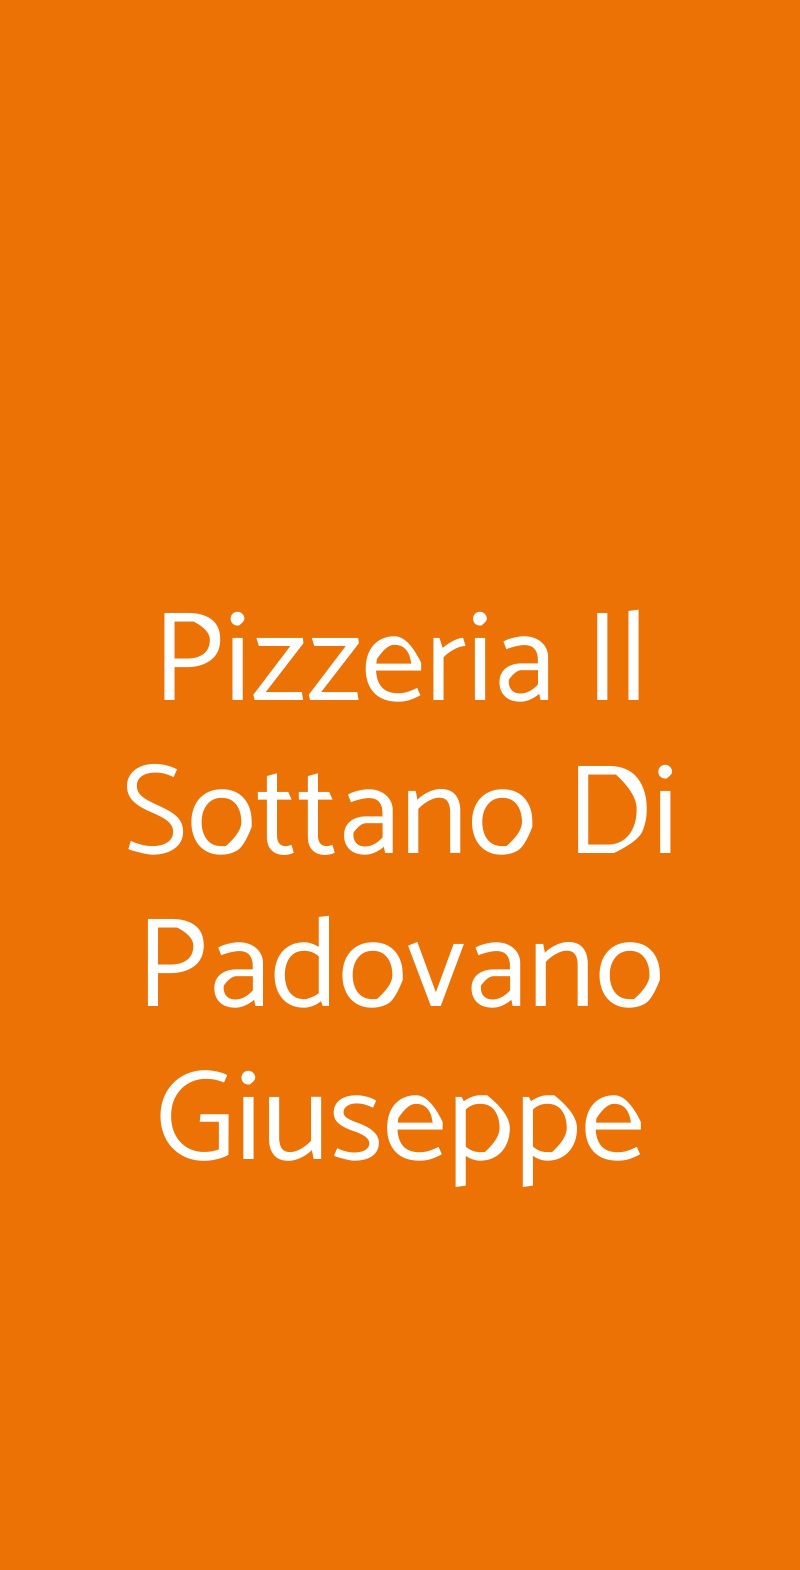 Pizzeria Il Sottano Di Padovano Giuseppe Bari menù 1 pagina